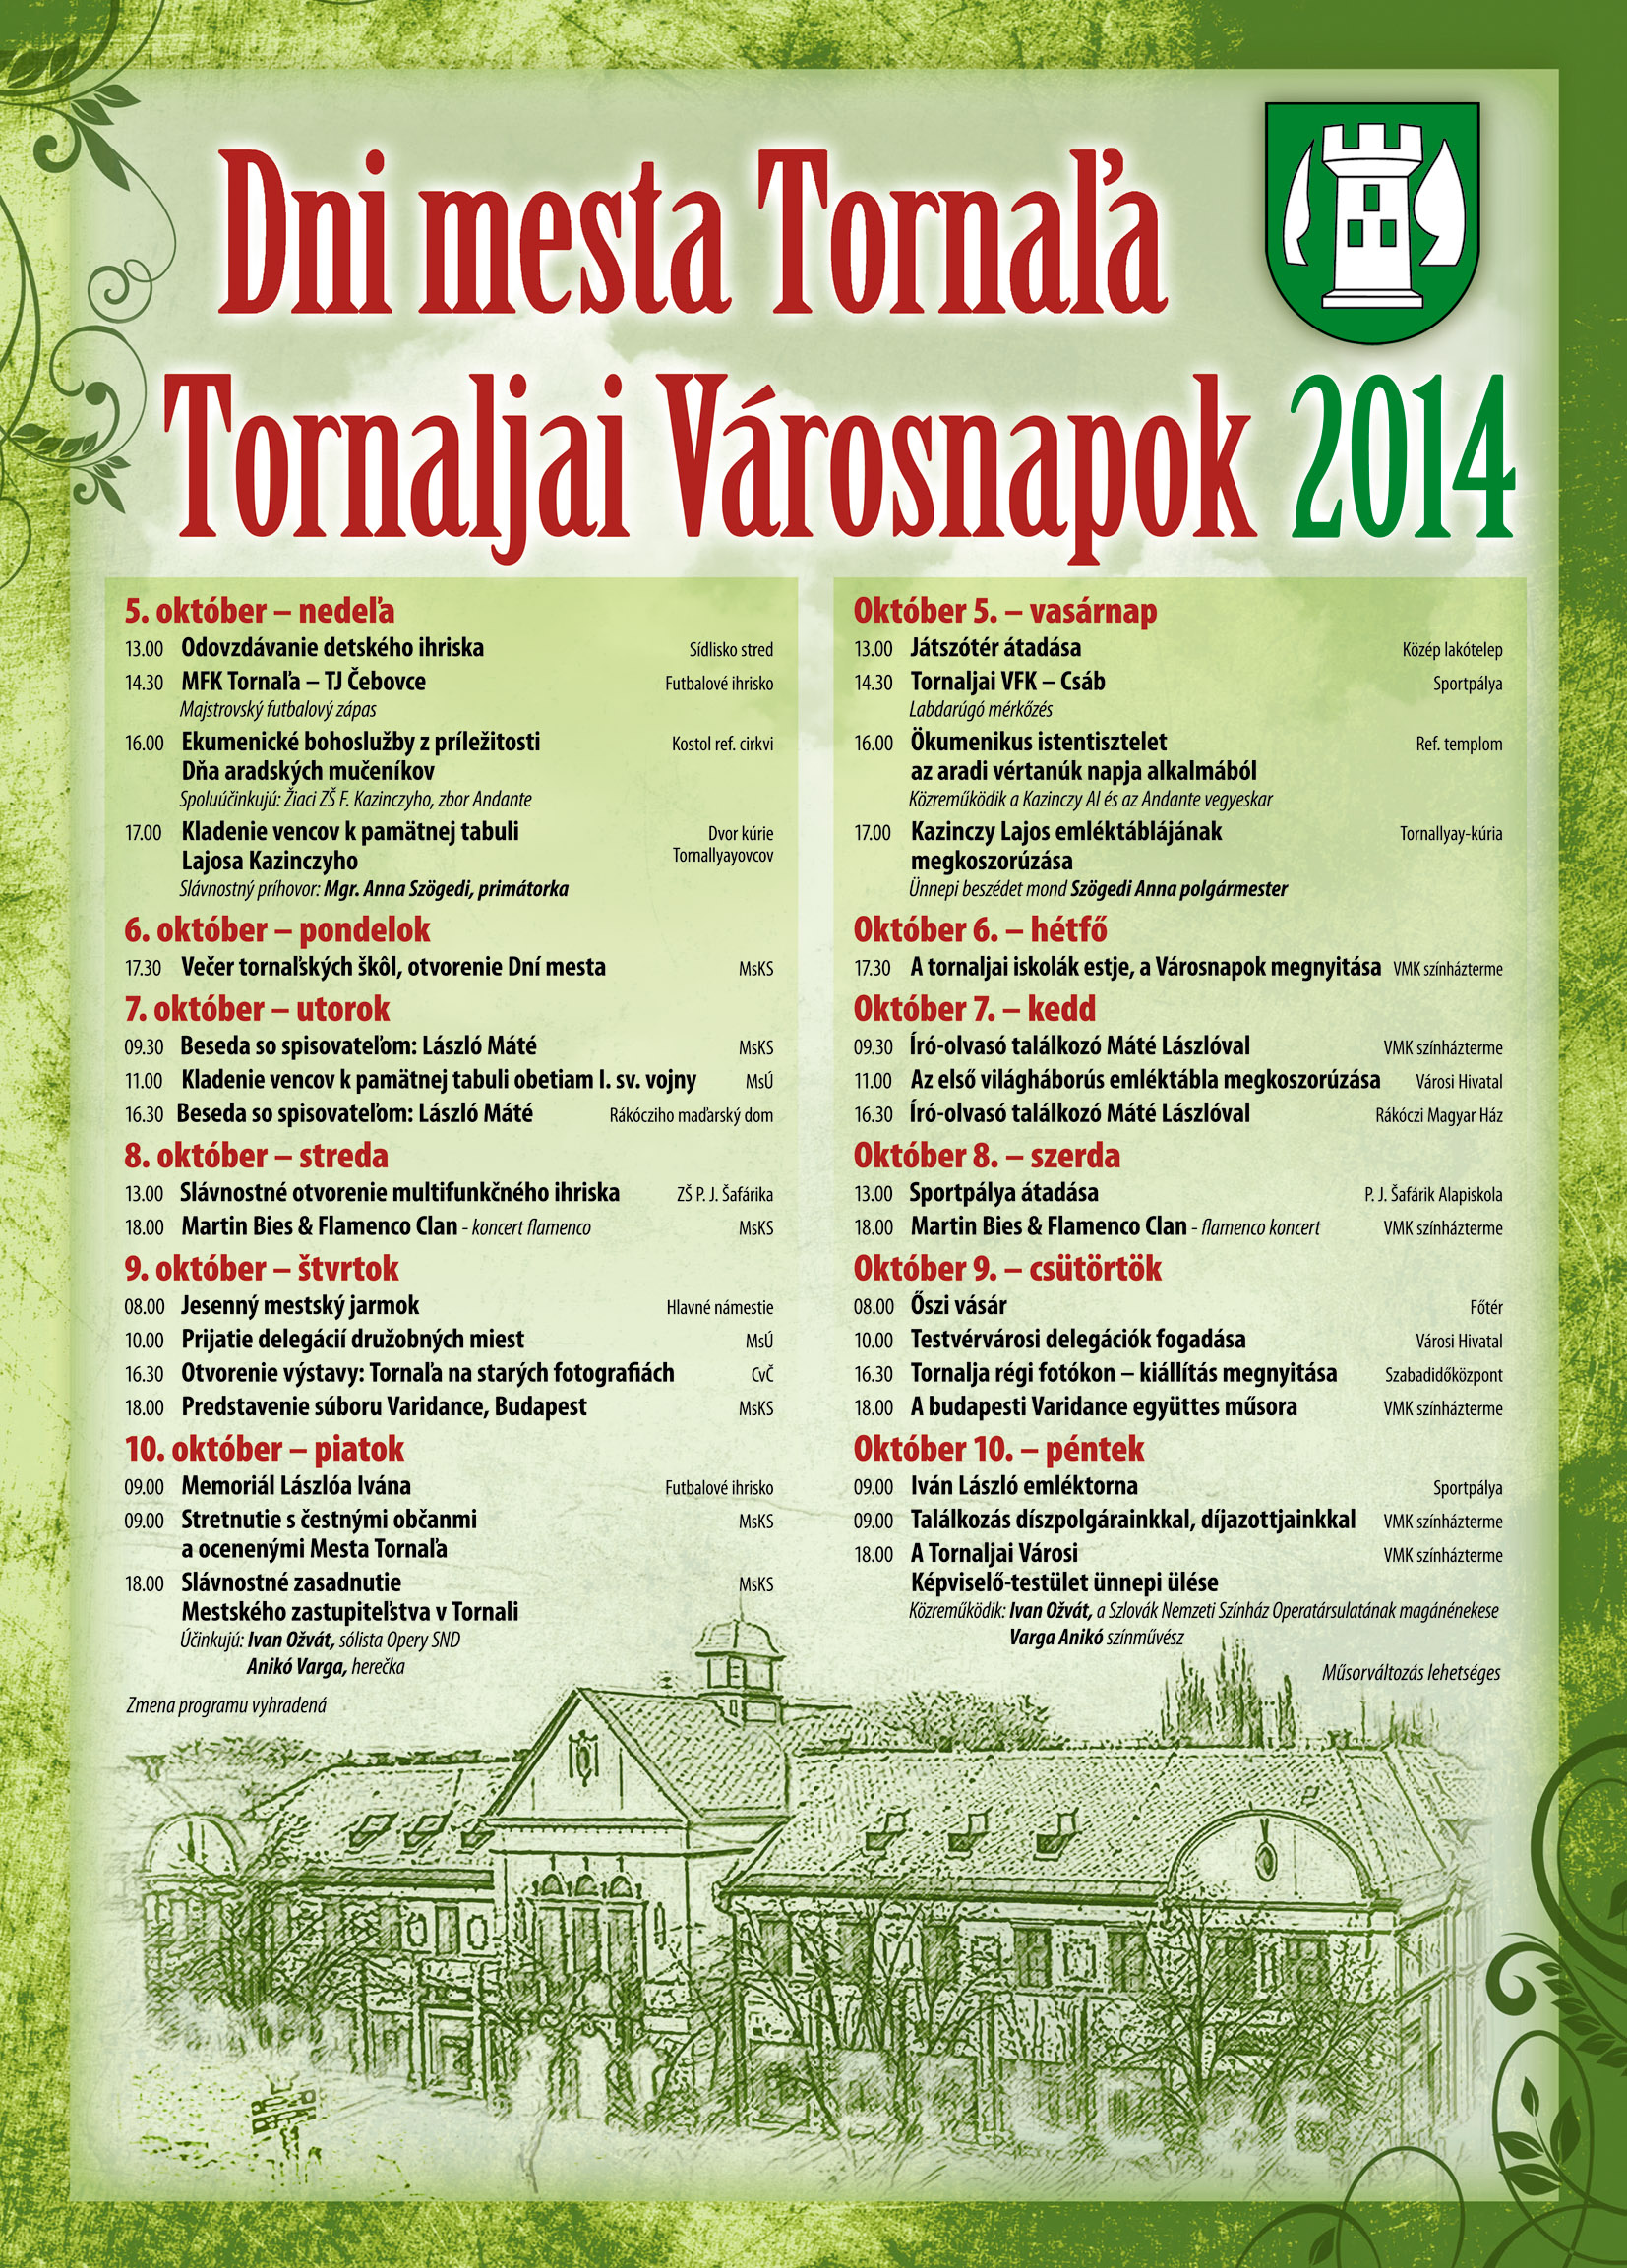 Tradičný jarmok na Dni mesta Tornaľa 2014